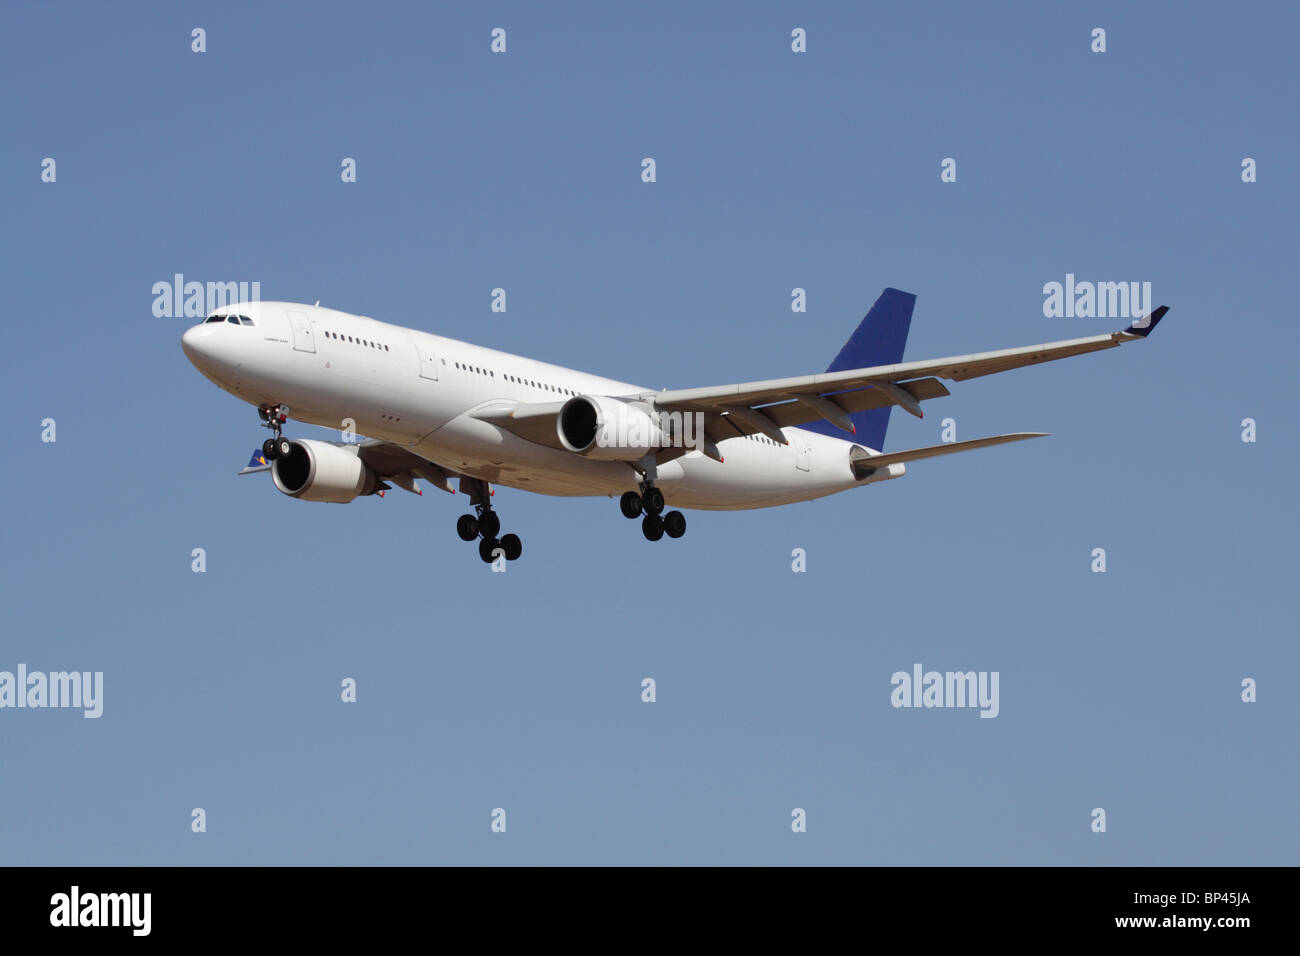 Viajes aéreos. Airbus A330 avión de pasajeros comercial de fuselaje ancho y largo alcance en vuelo contra un cielo azul. No se han eliminado detalles de propiedad y de propiedad. Foto de stock